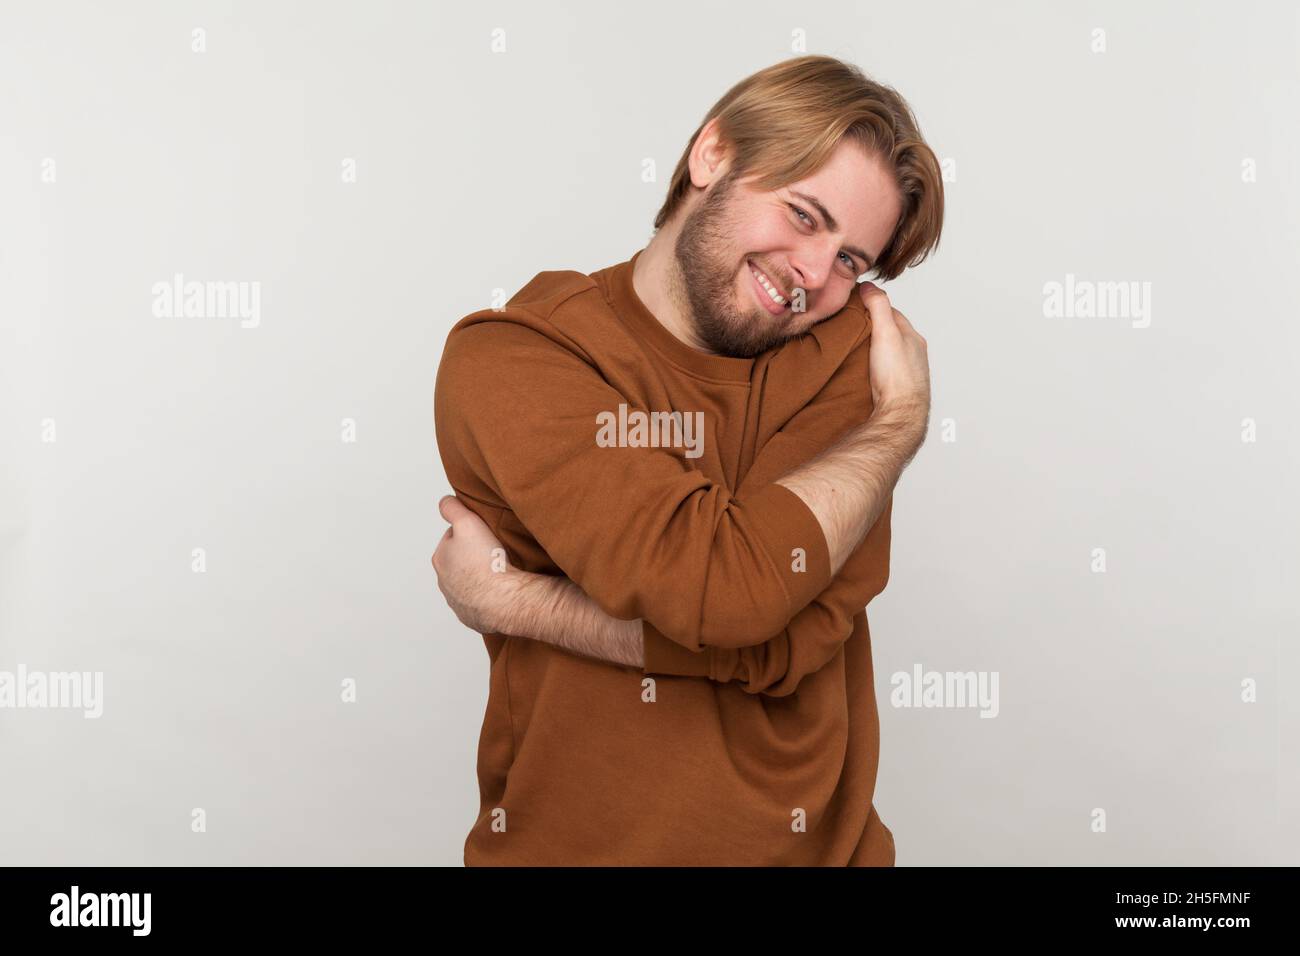 Ritratto di felice bell'uomo con barba che indossa una felpa, in piedi e abbracciandosi con un sorriso toothy godendo, autostima positiva. Studio interno girato isolato su sfondo grigio. Foto Stock